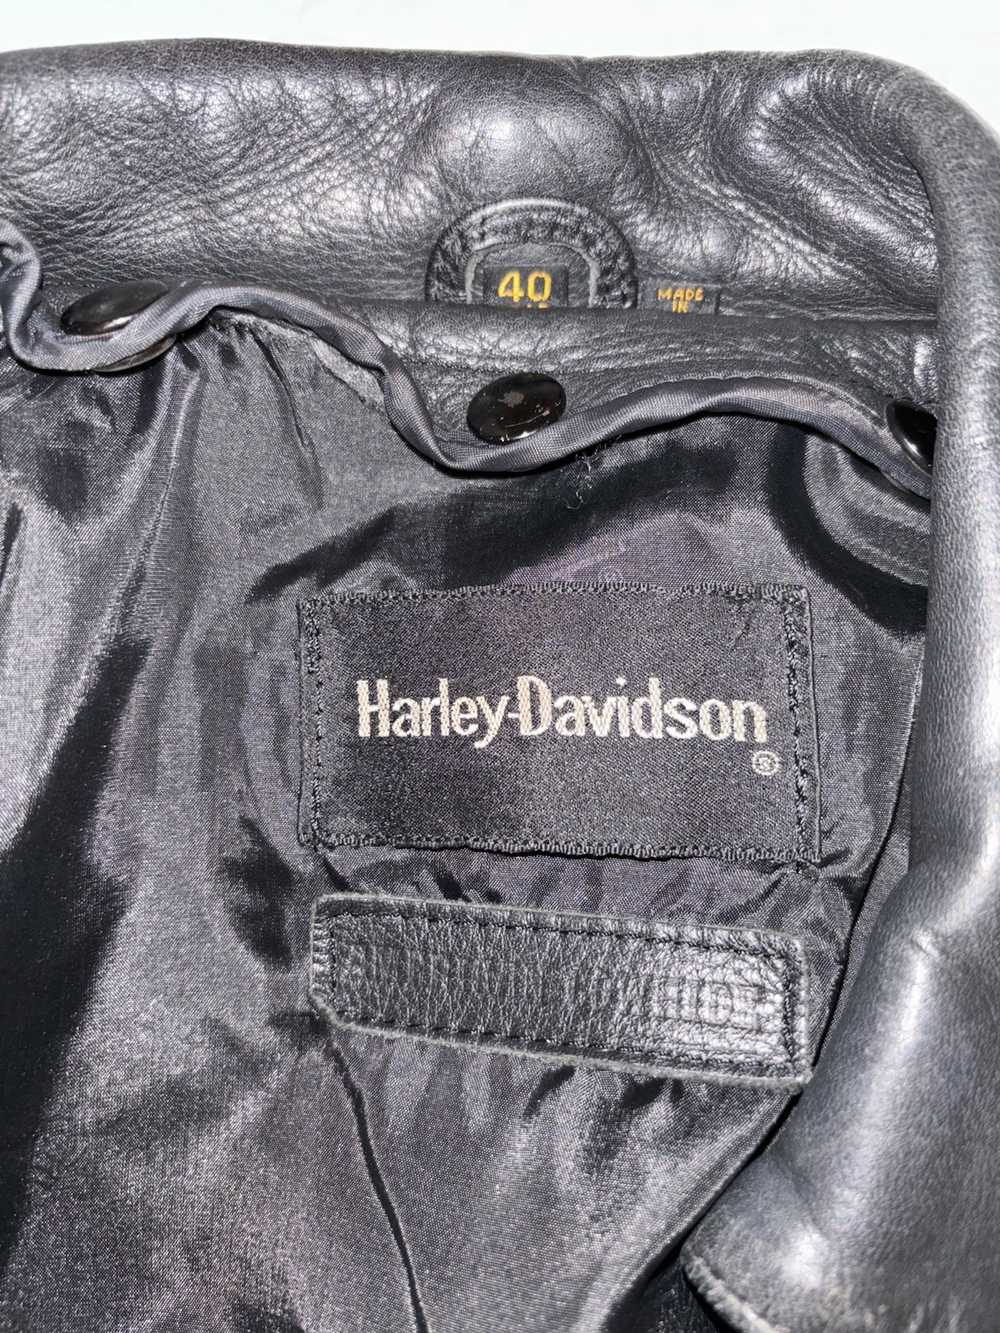 Harley Davidson Harley Davidson leather jacket - image 8